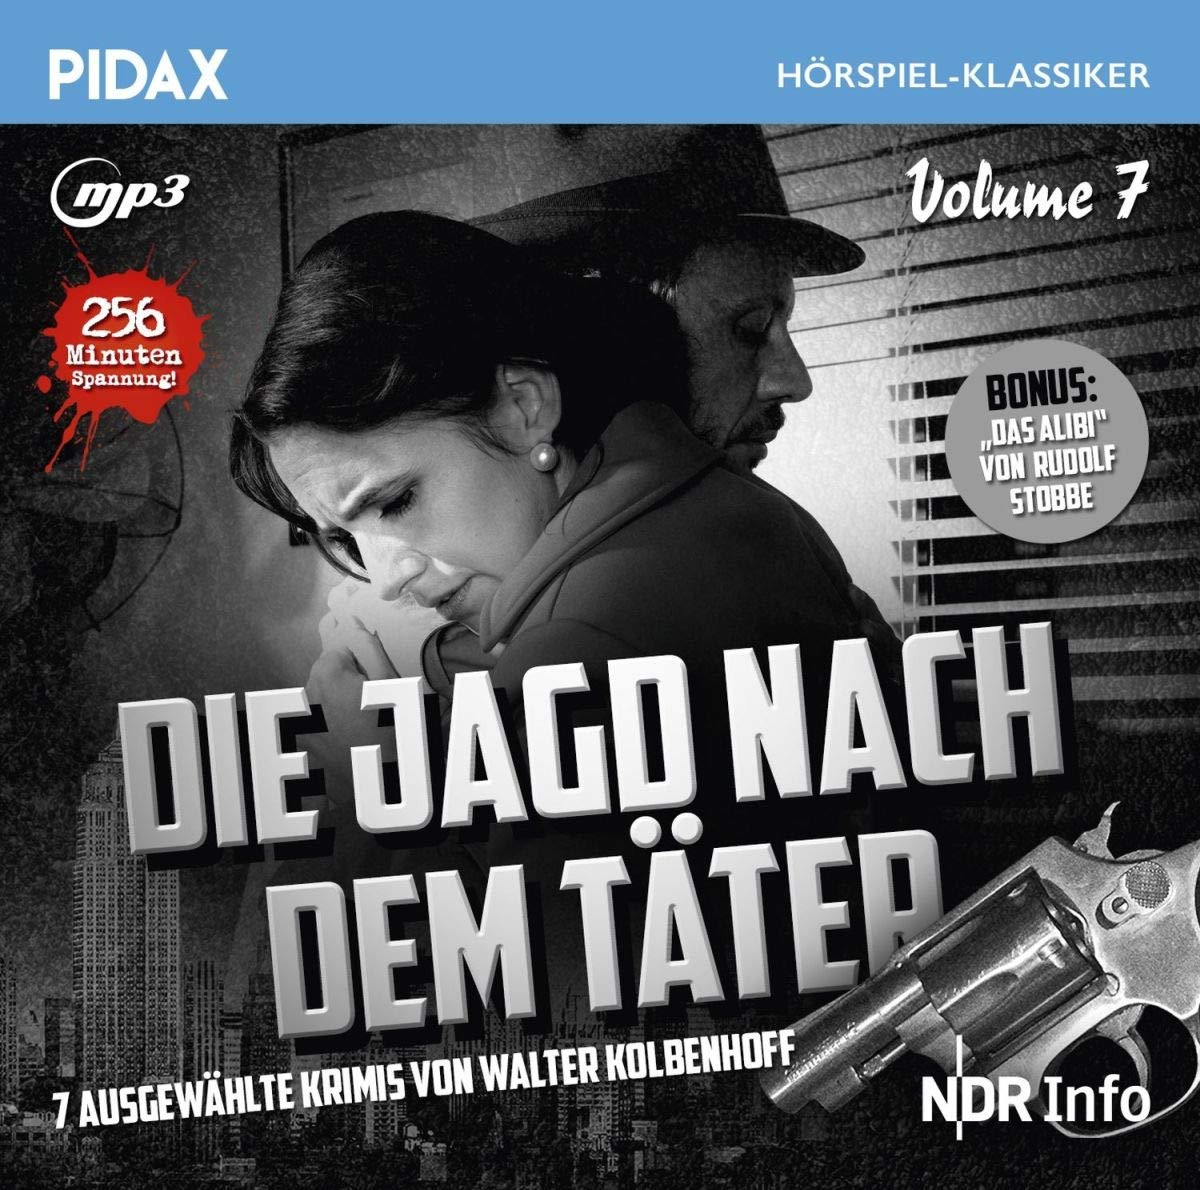 Pidax Hörspiel Klassiker - Die Jagd nach dem Täter - Vol. 7